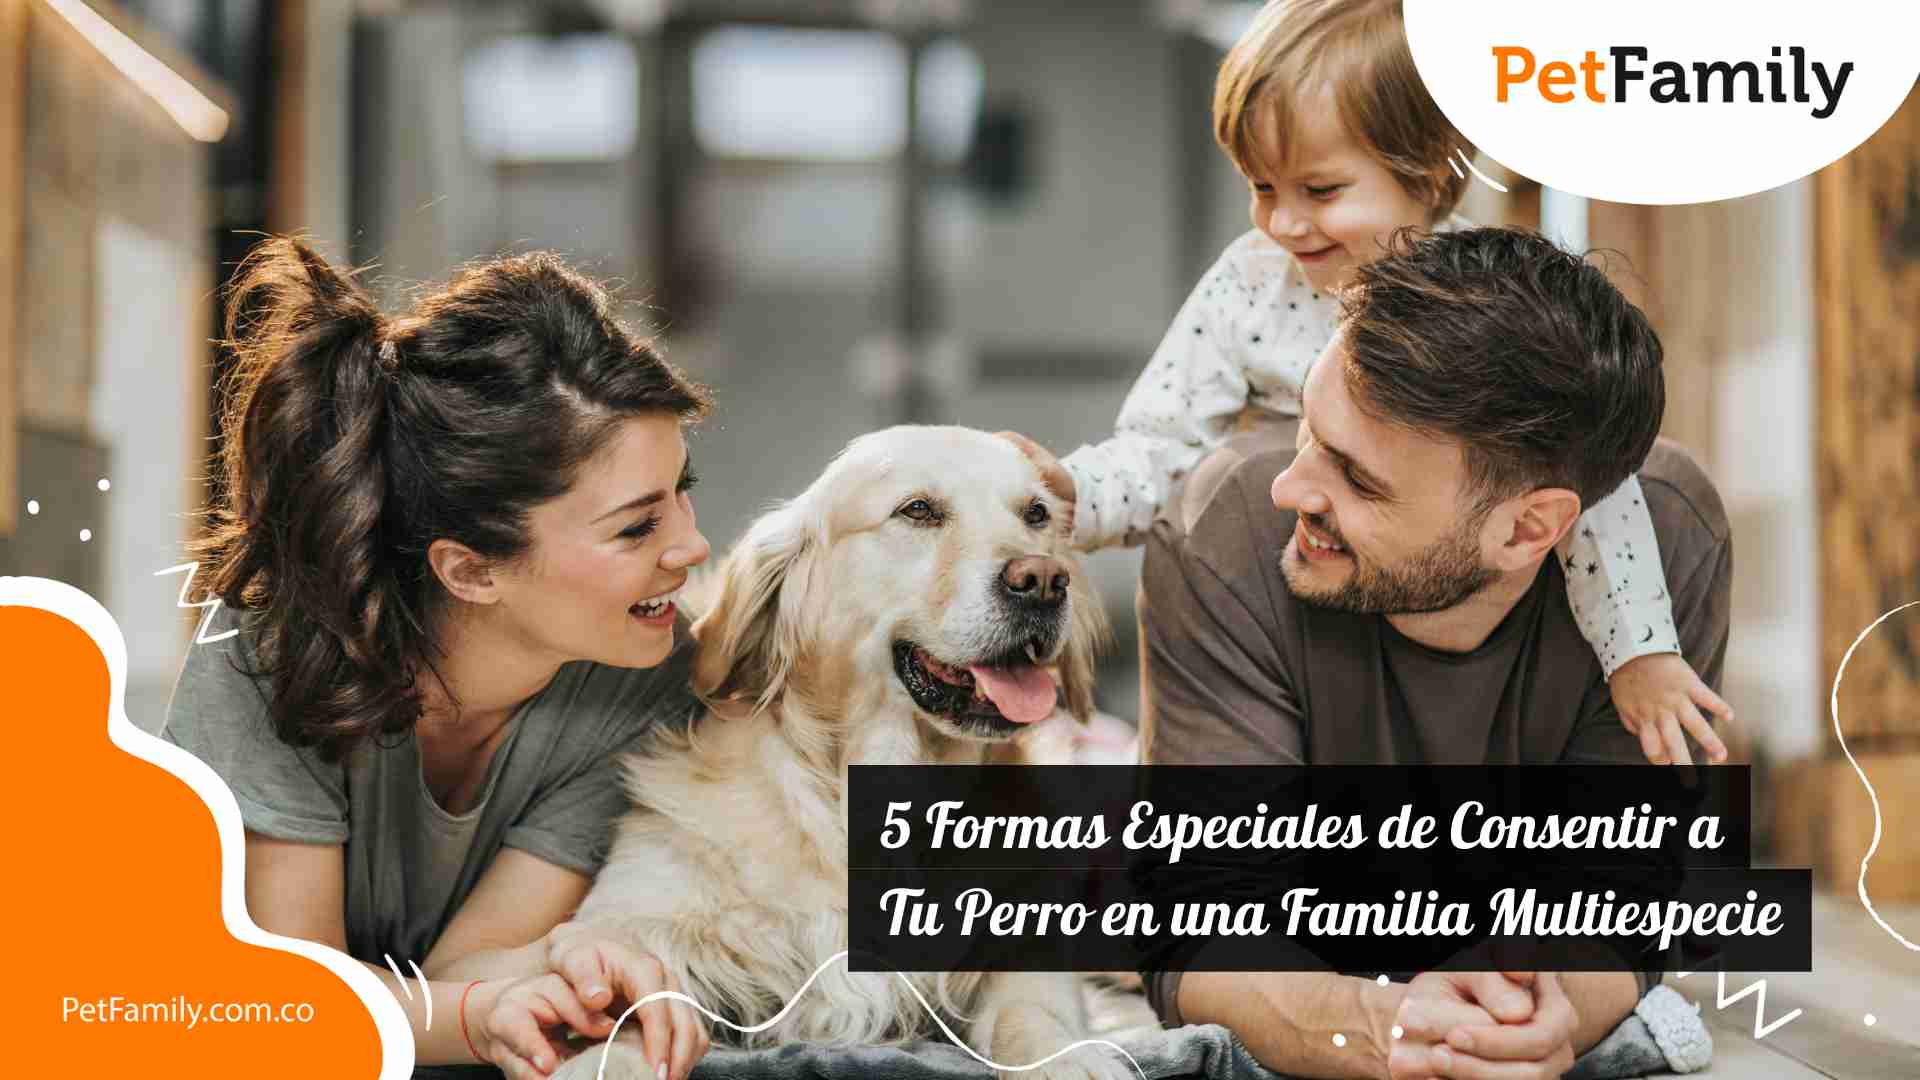 5 Formas Especiales de Consentir a Tu Perro en una Familia Multiespecie